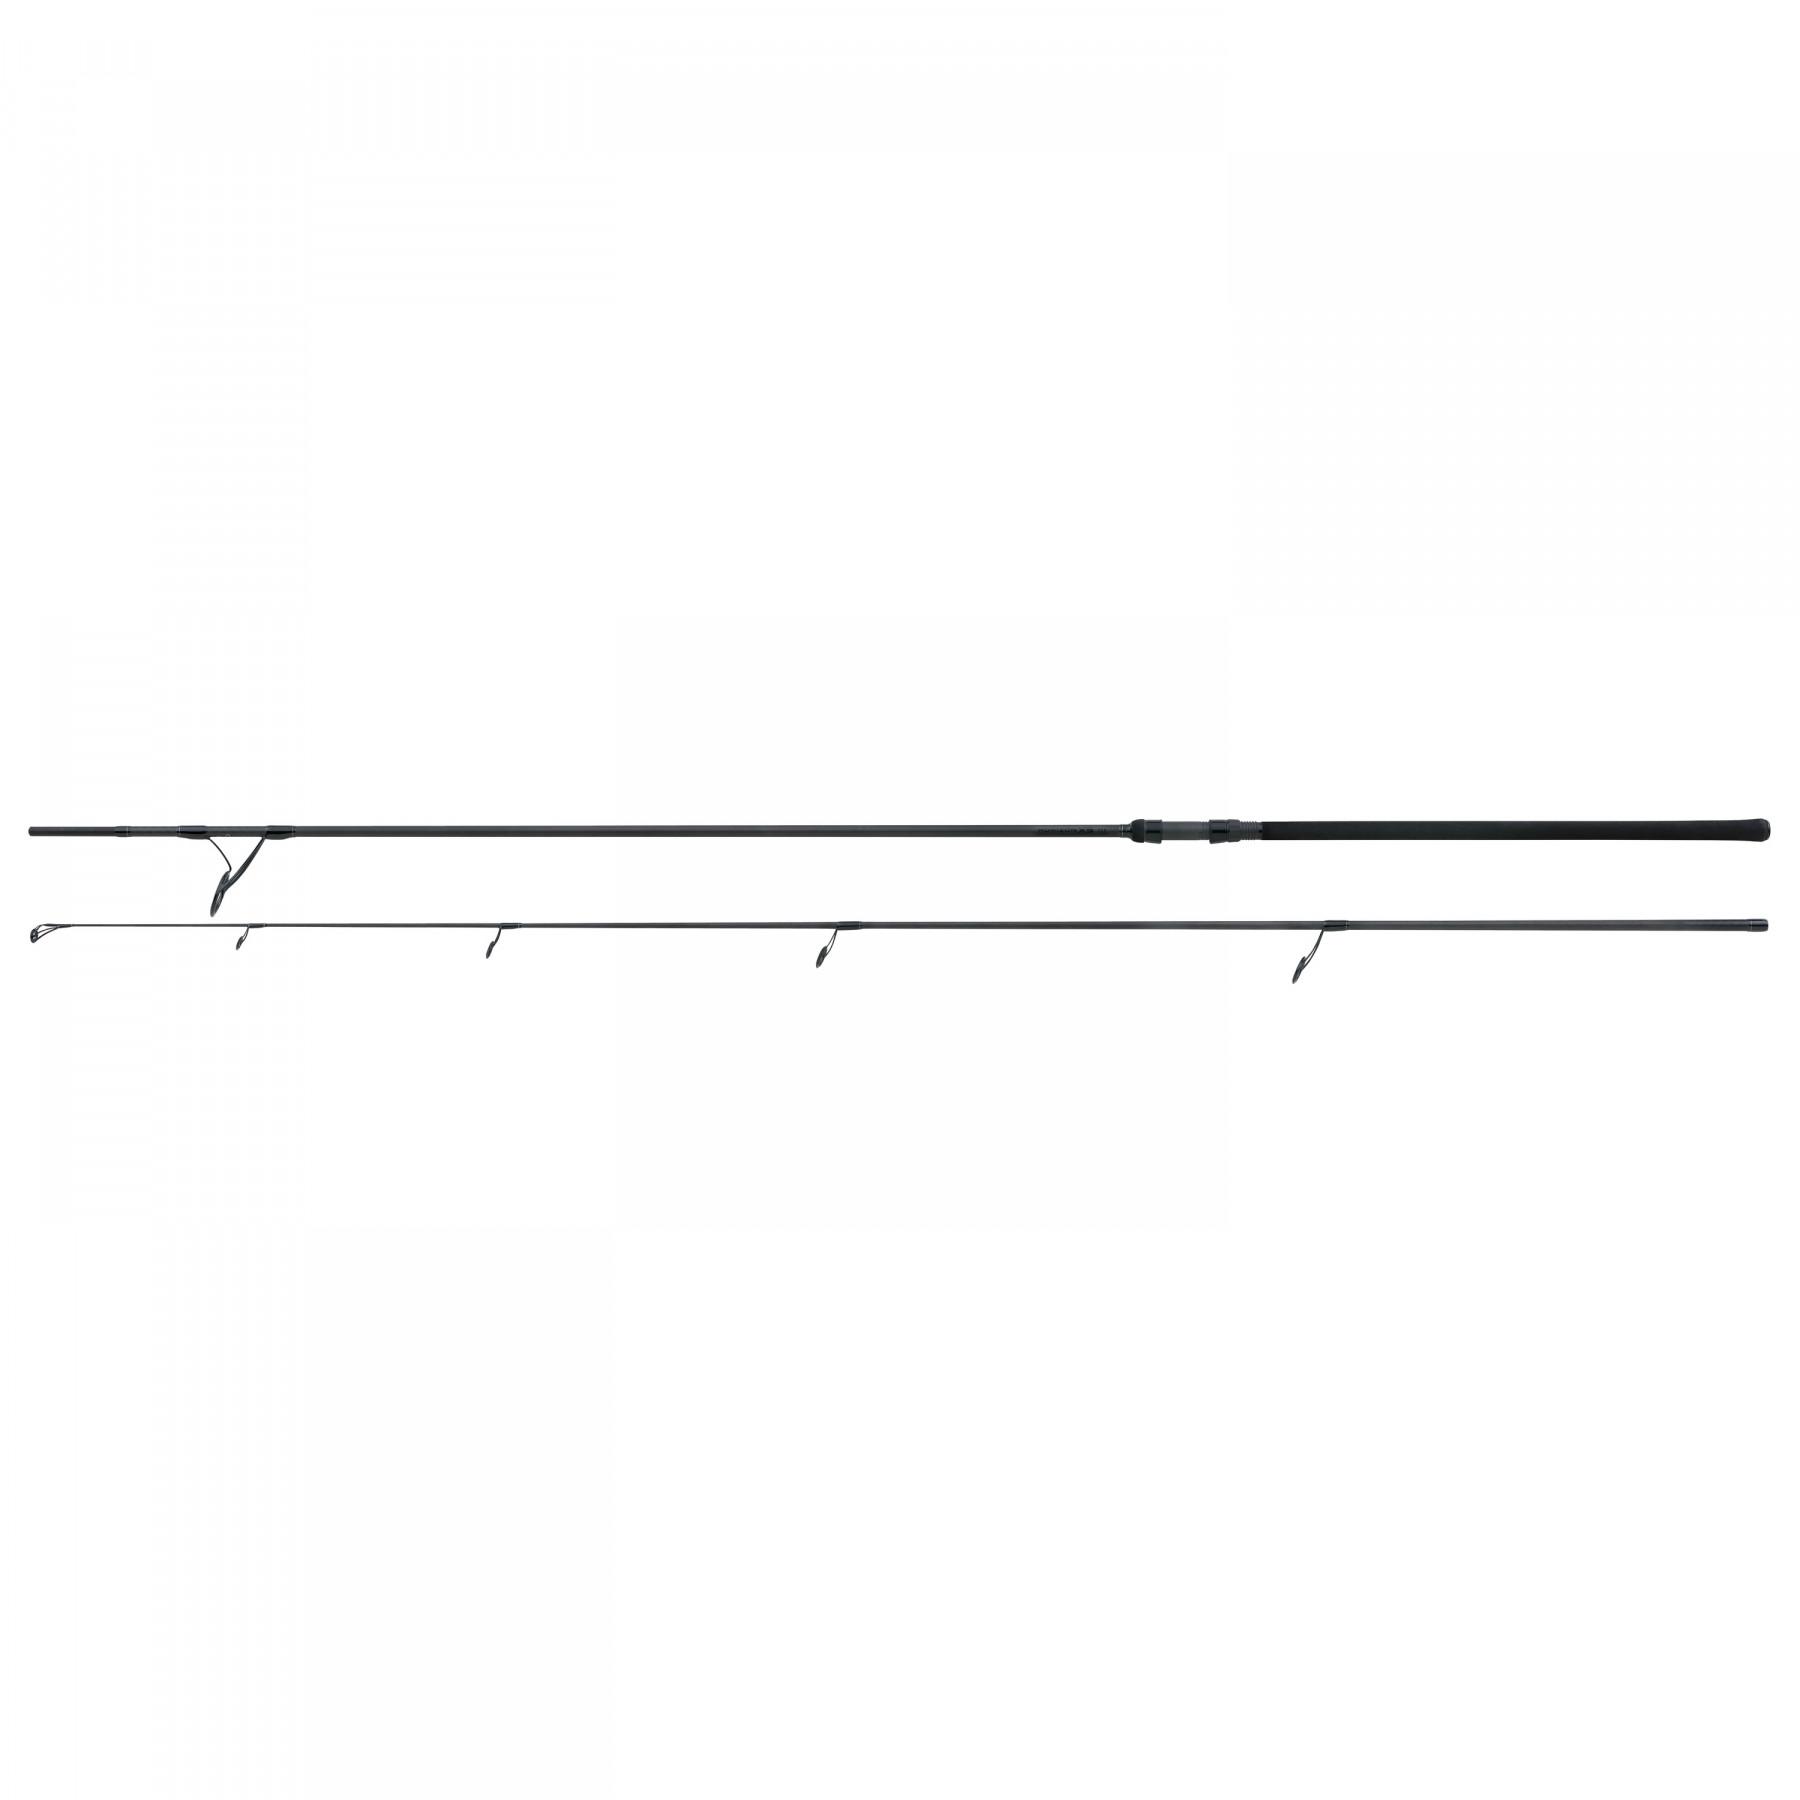 Hengel Fox Horizon X5 12ft 3.25lb 50mm Ringing Duplon Handle